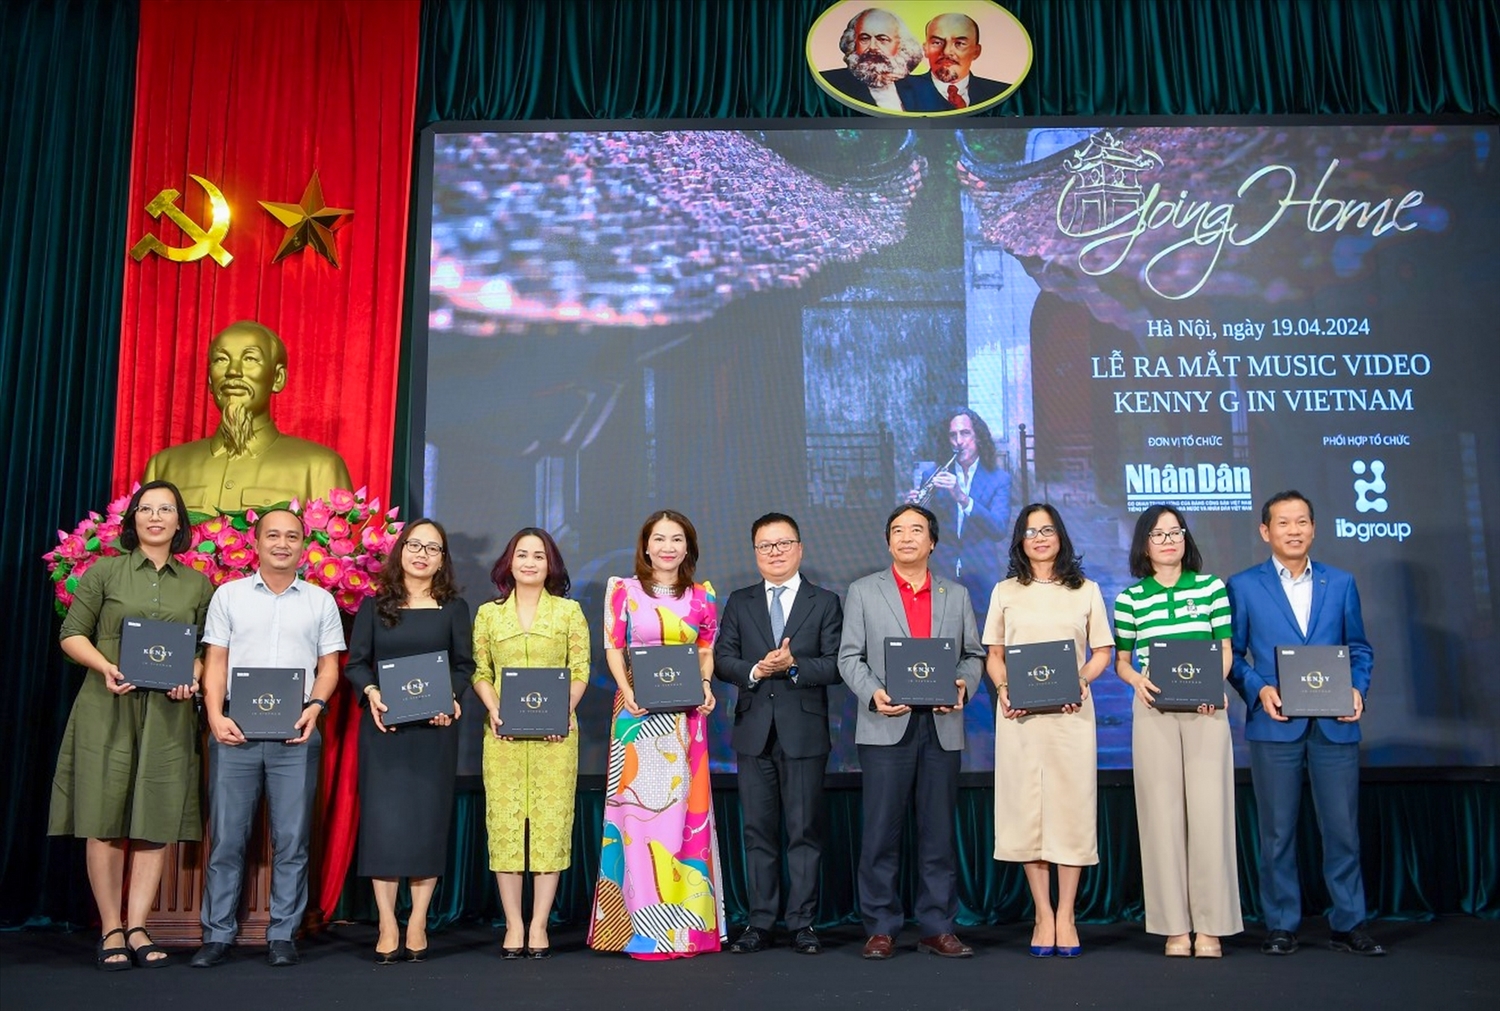 Ban tổ chức trao tặng MV “Going Home” cho đại diện các tập đoàn du lịch - khách sạn, hãng hàng không, các đài truyền hình… nhằm lan tỏa sản phẩm âm nhạc đặc biệt này, góp phần quảng bá văn hóa, du lịch Việt Nam đến du khách trong nước và quốc tế.